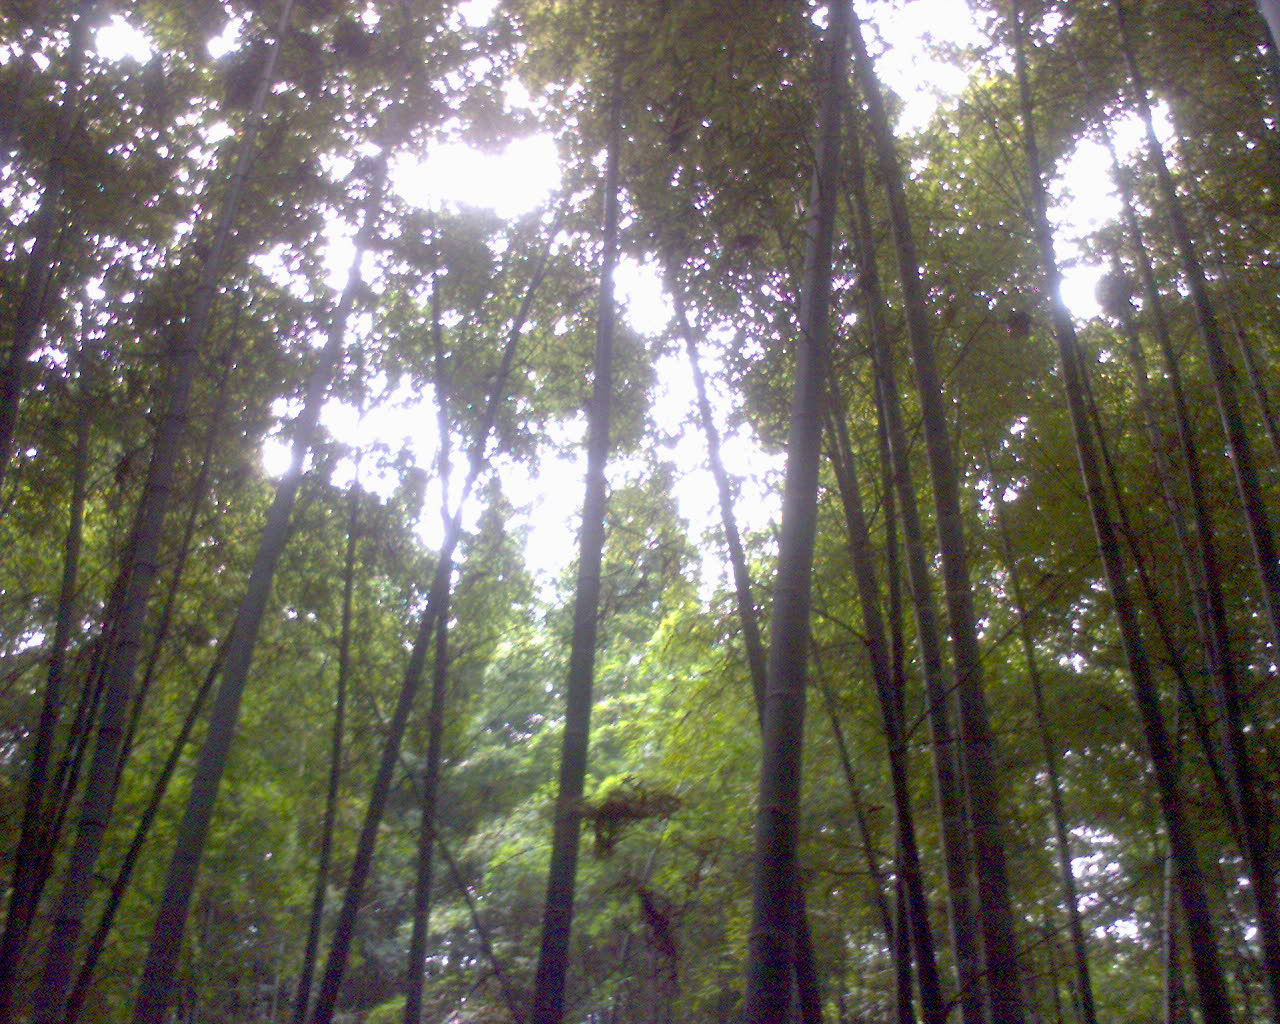 竹洞天風景區